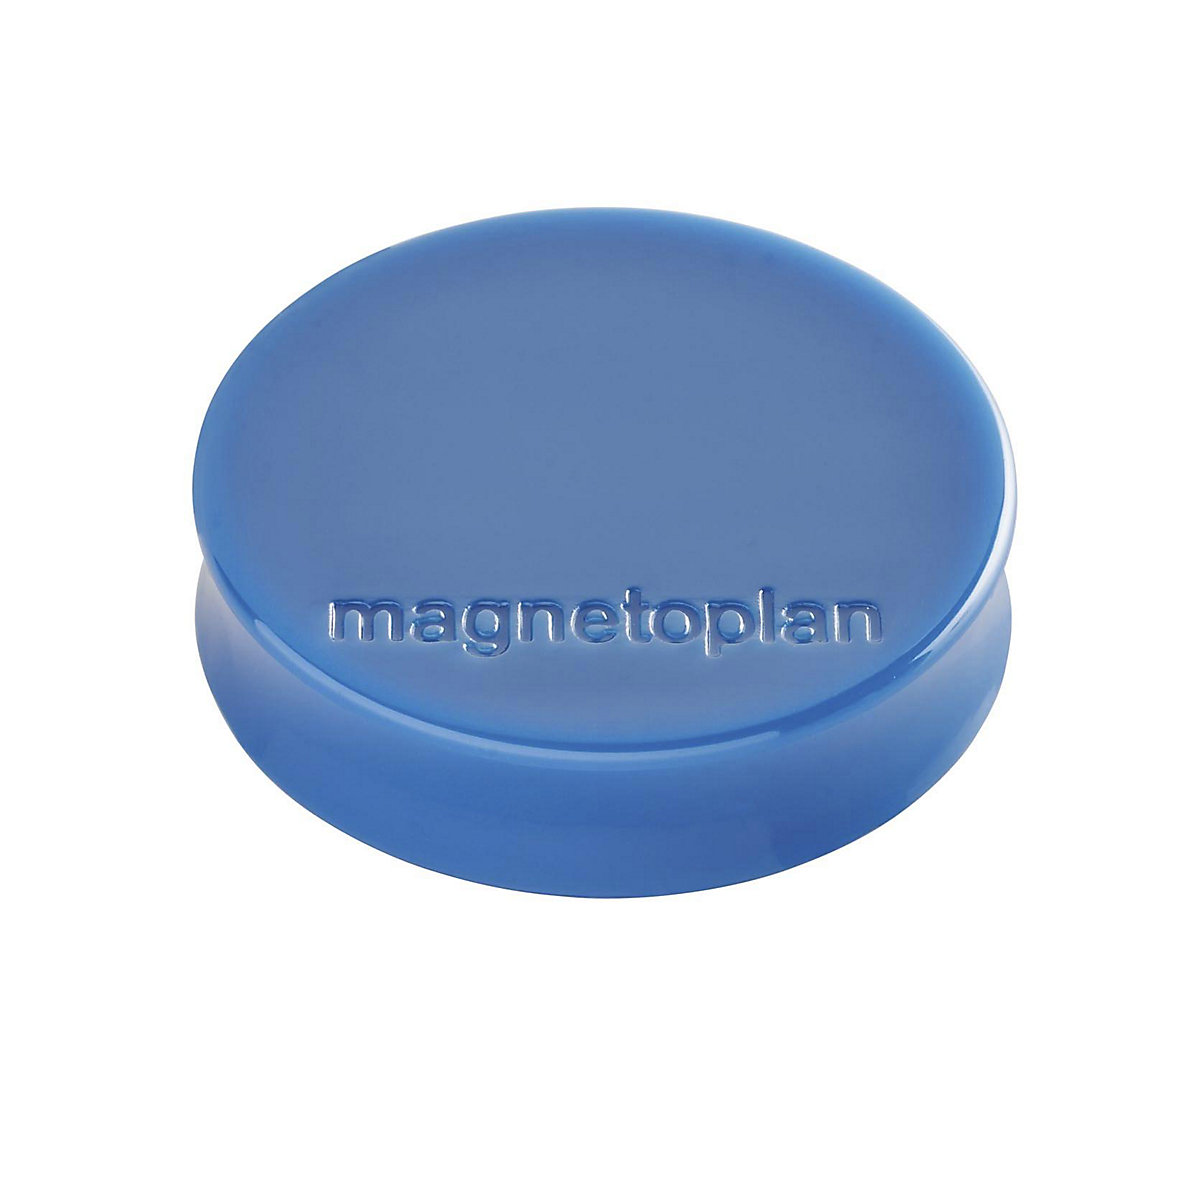 Ergo magnet – magnetoplan, Ø 30 mm, pack of 60, dark blue-9